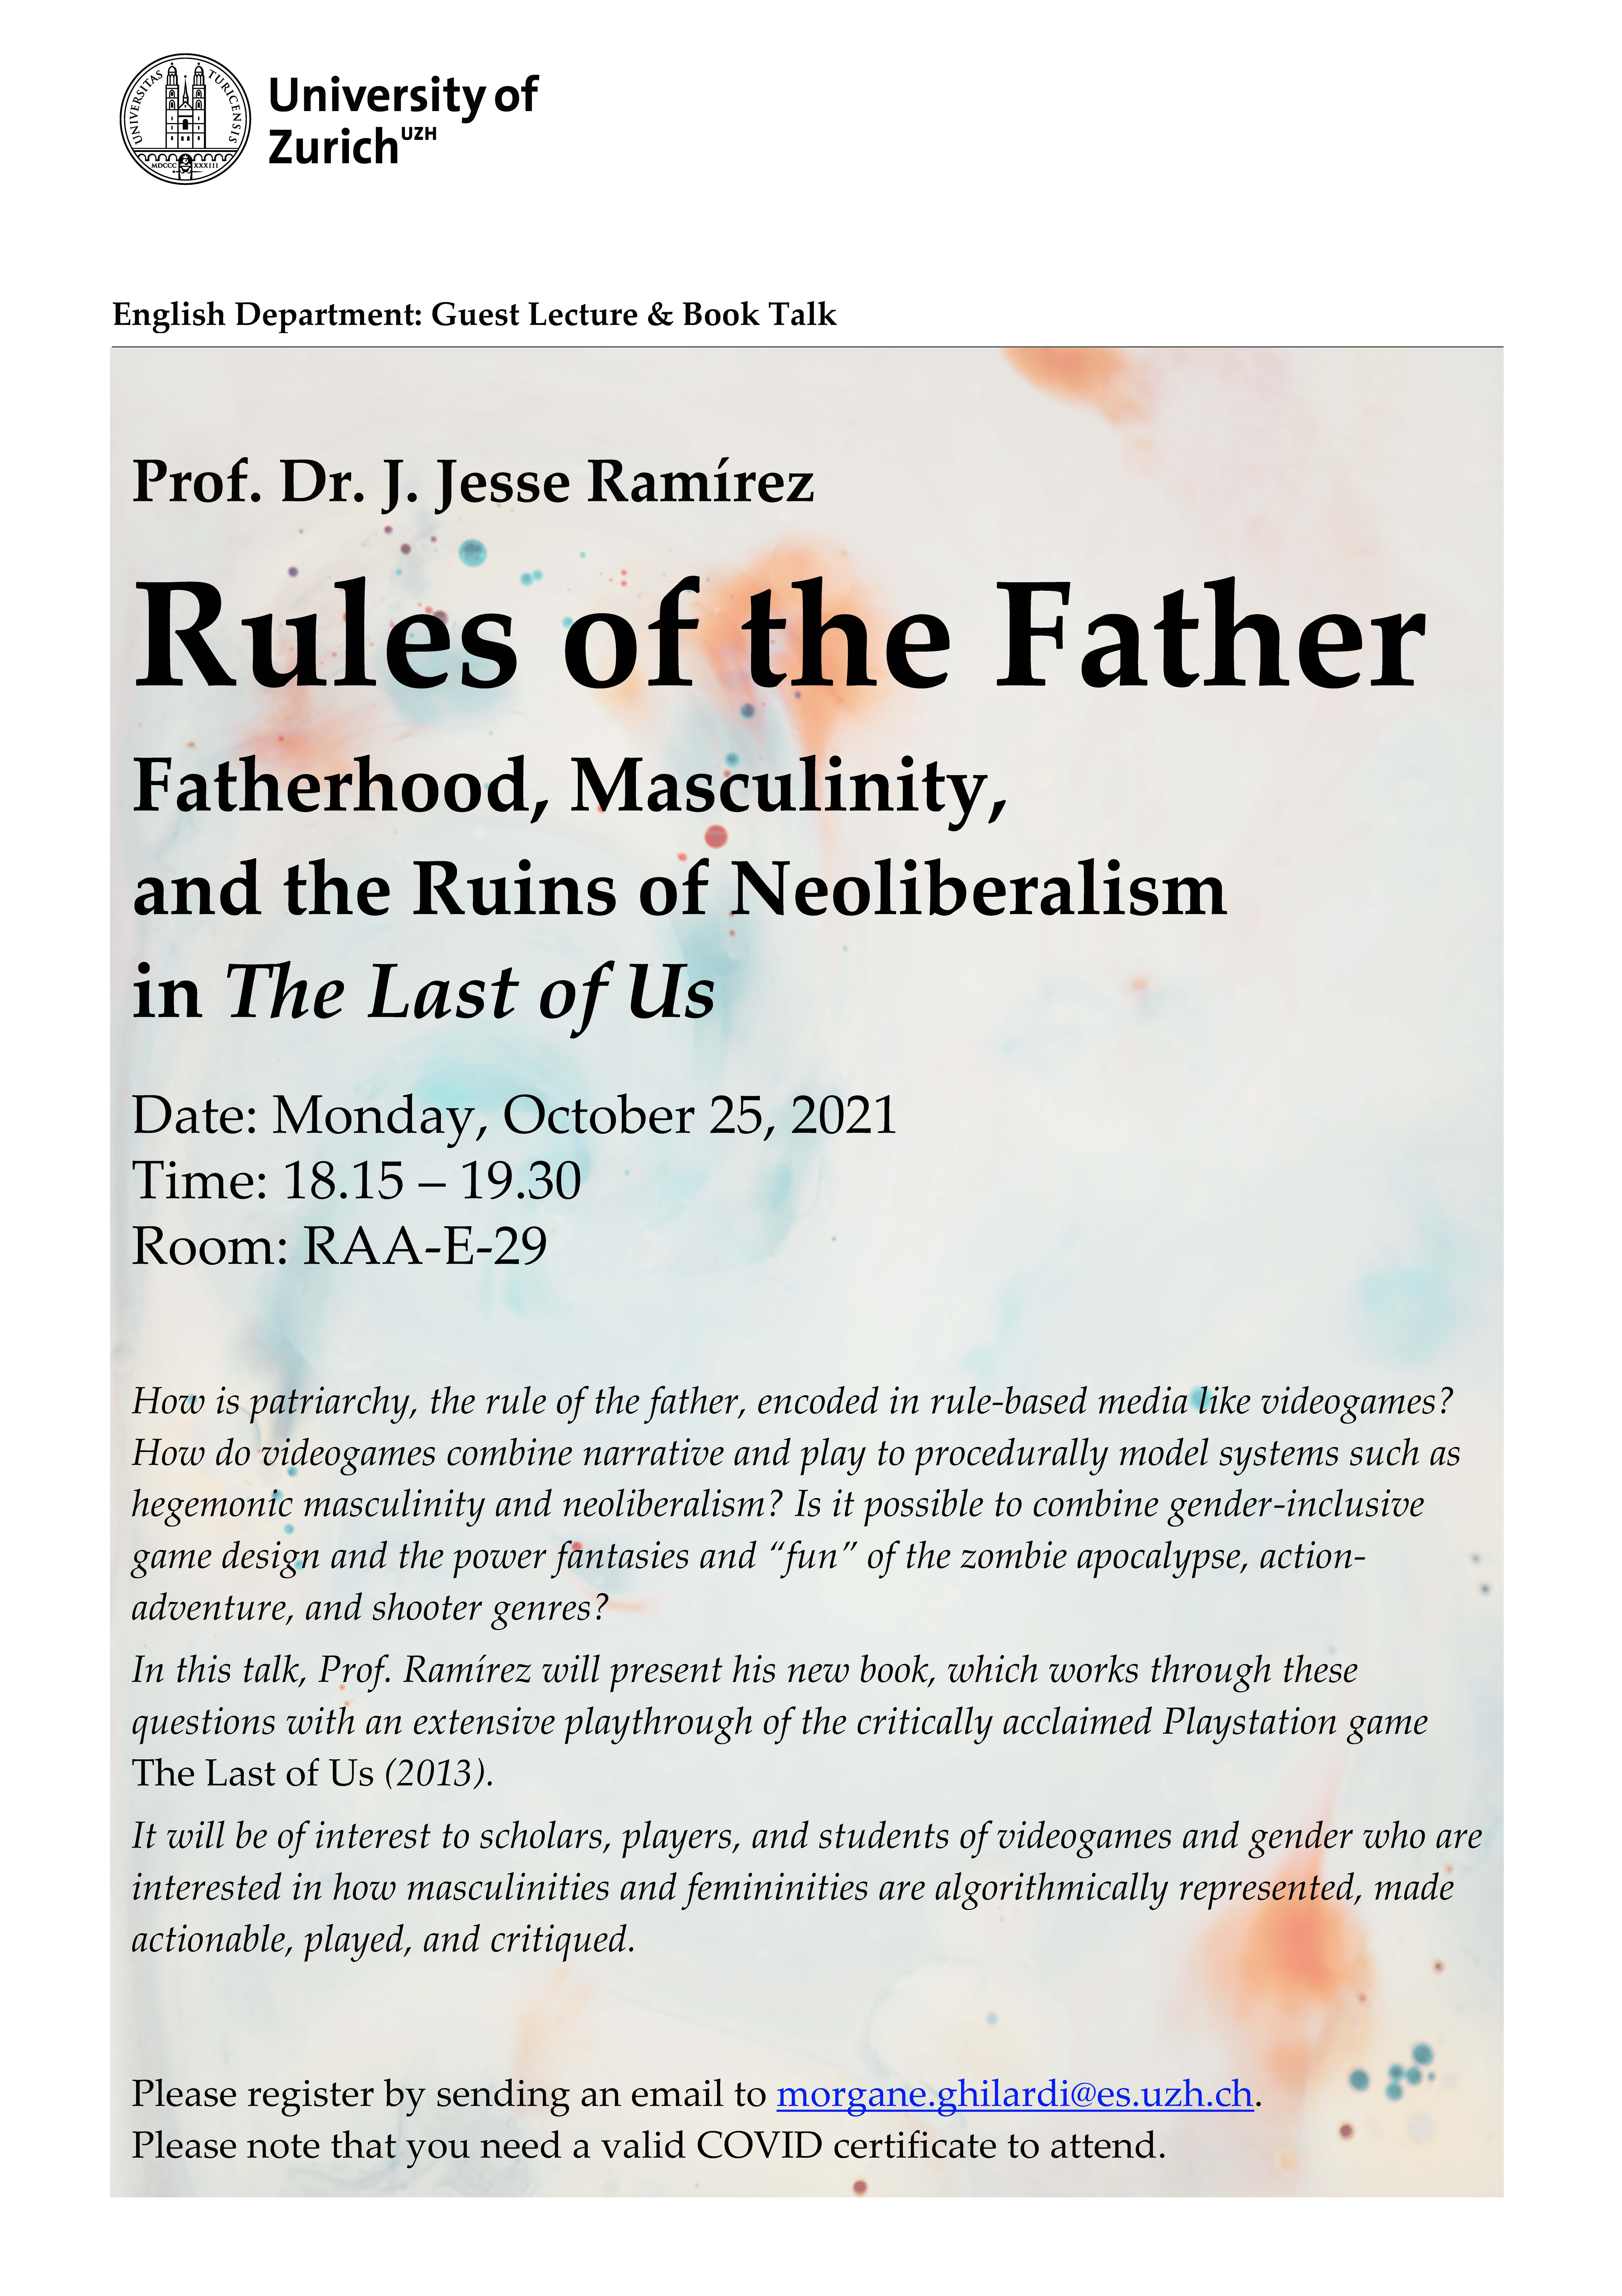 Guest Lecture Prof. Dr. J. Jesse Ramírez 